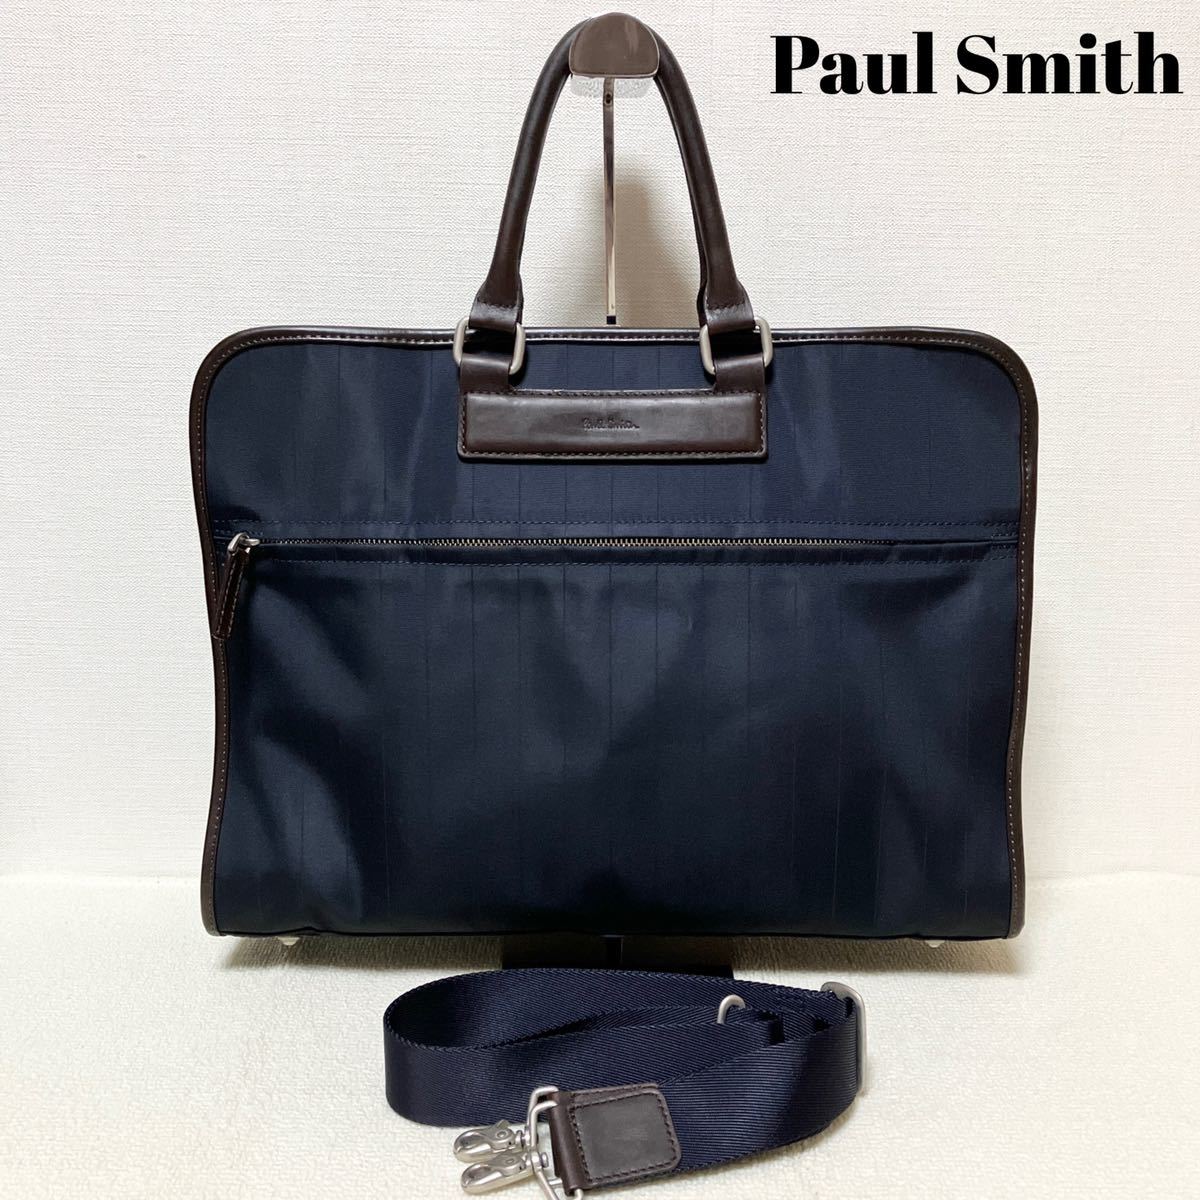 ビジネスバッグ 鞄 Paul smith ブリーフケース ネイビー×ブラウン